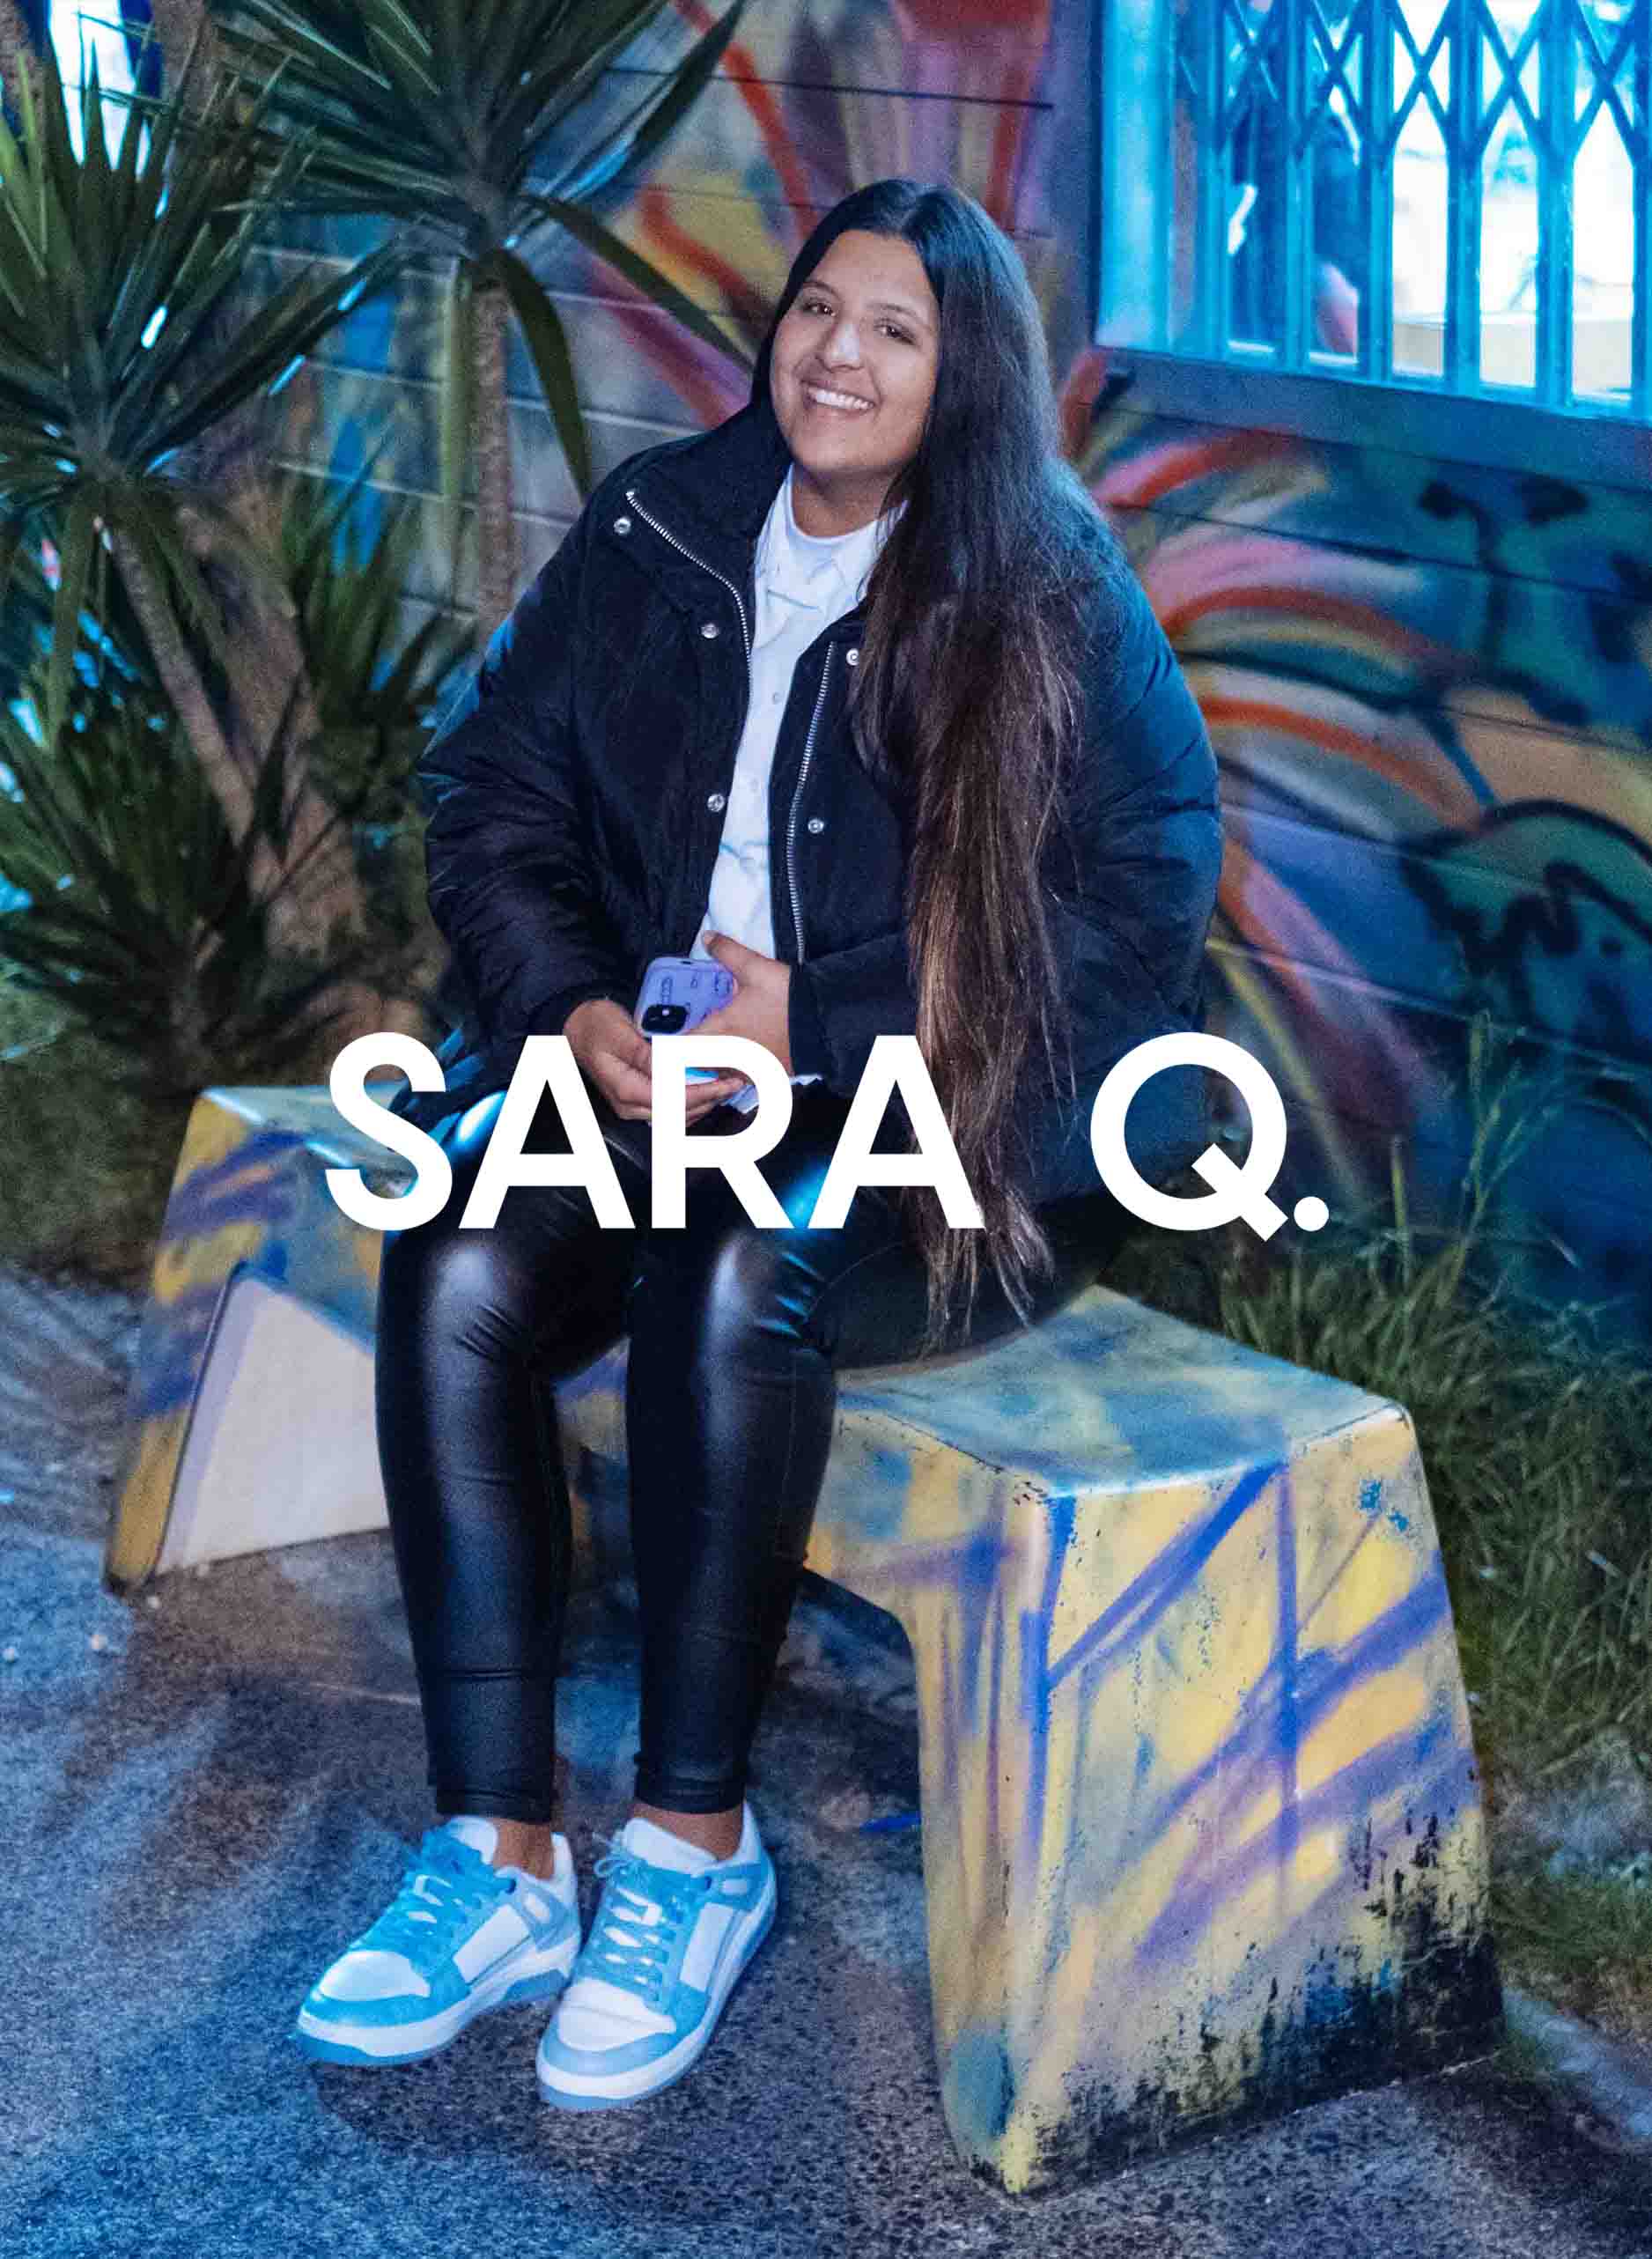 Sara sentada en un banco sonriendo, con Diverge sneakers, promoviendo el impacto social y el calzado personalizado a través del proyecto Imagine. 